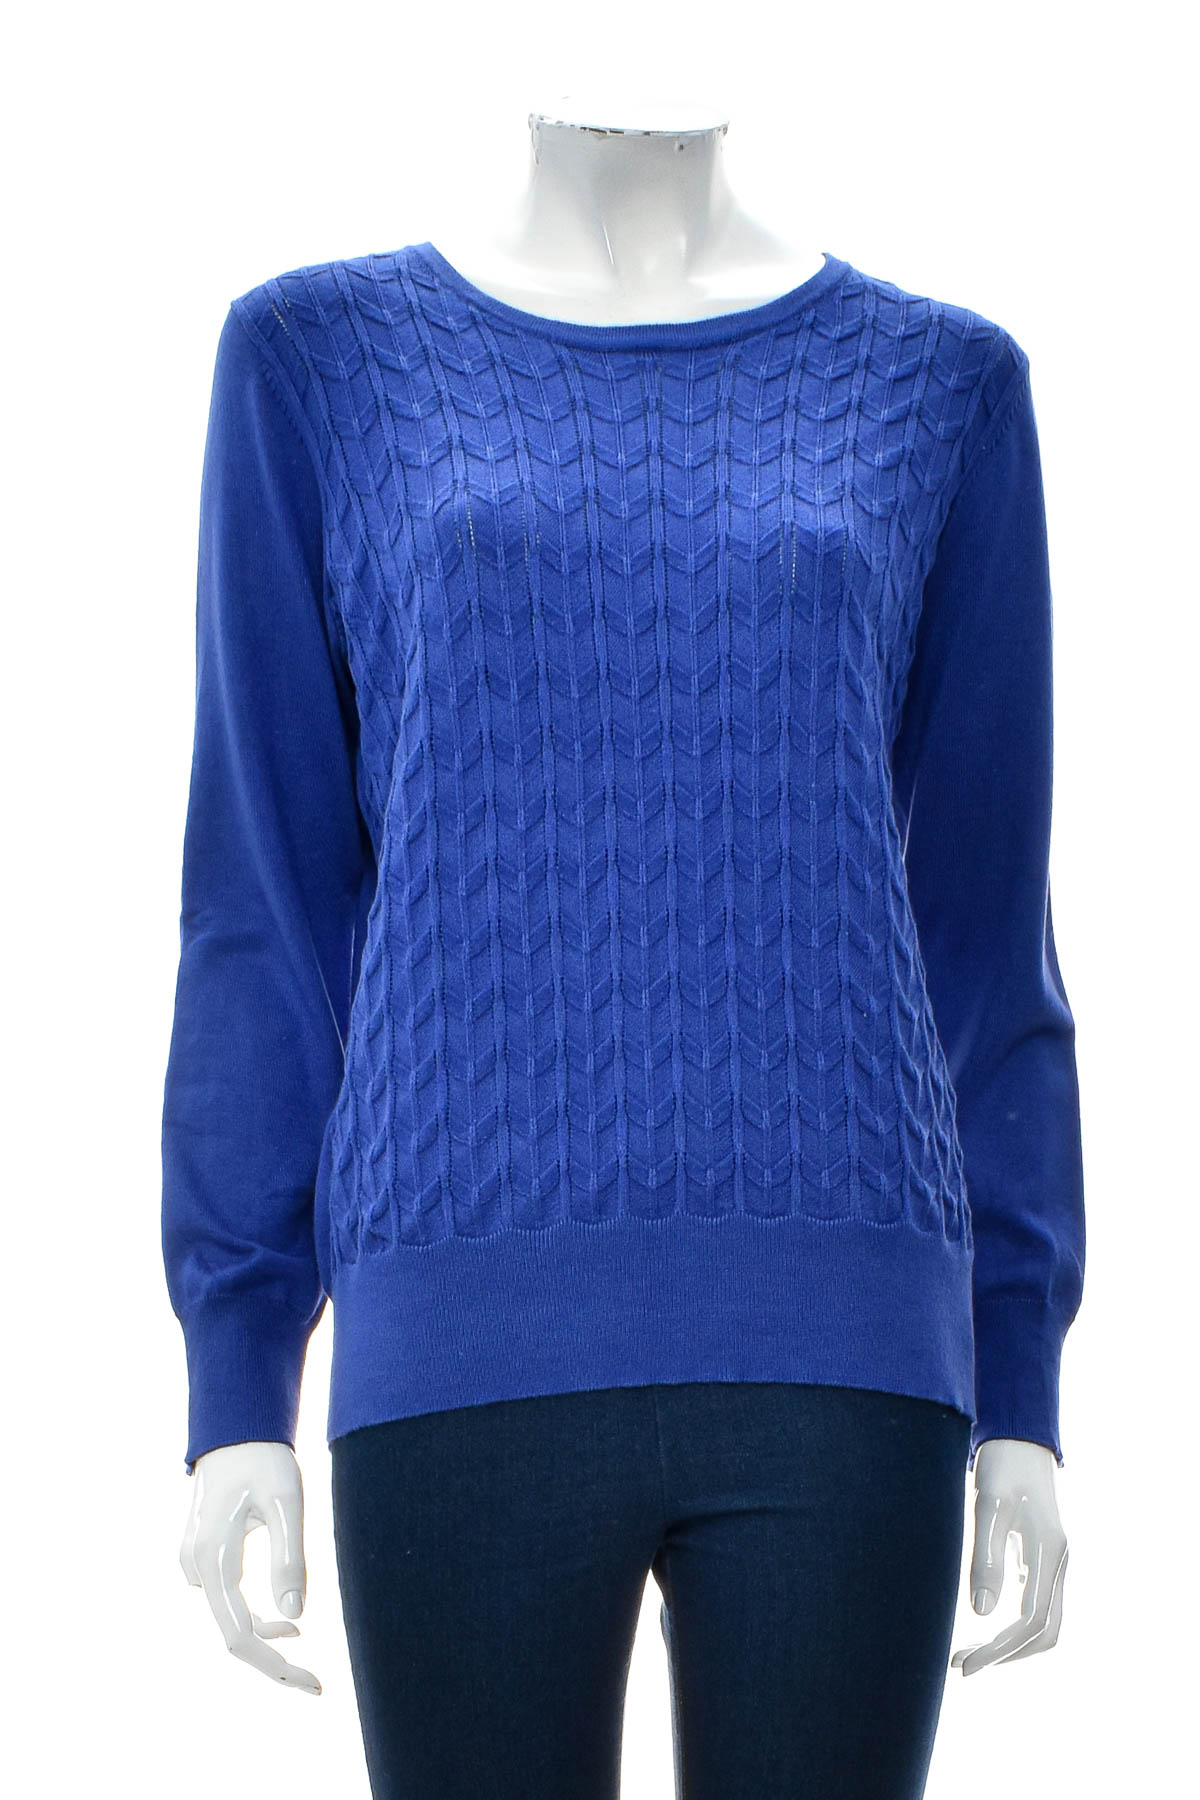 Women's sweater - NONI B - 0